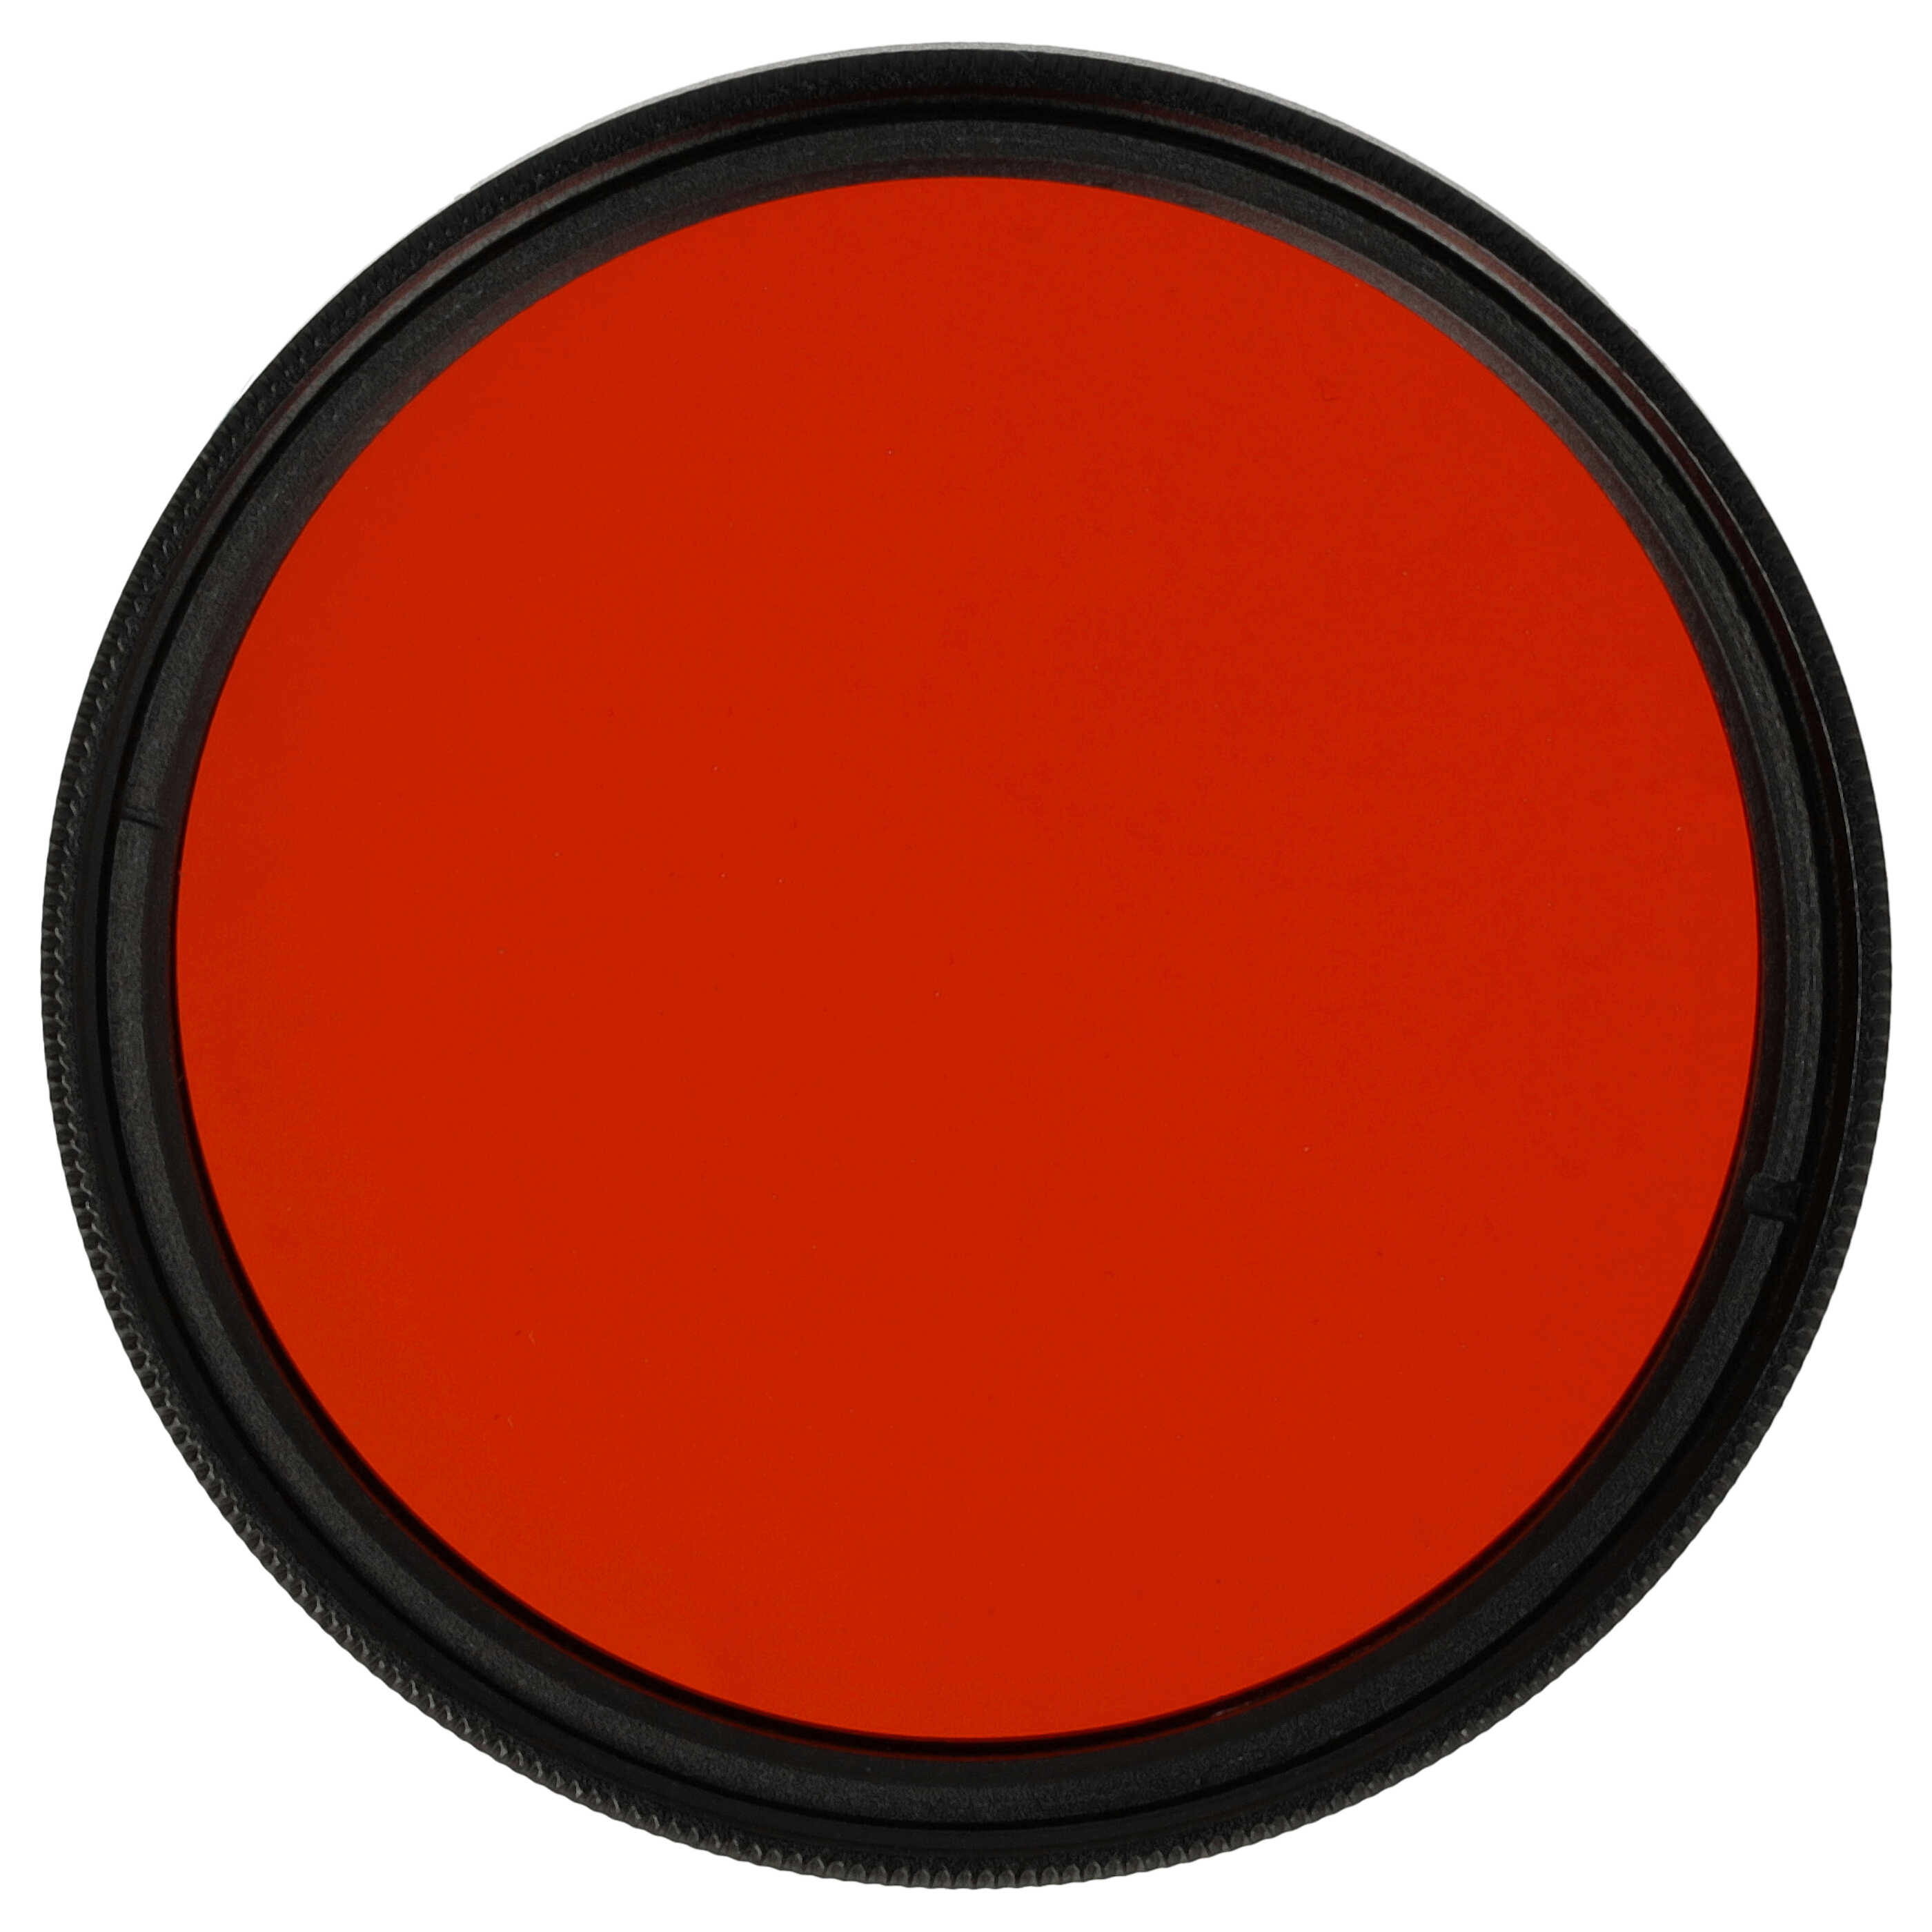 Filtr fotograficzny na obiektywy z gwintem 49 mm - filtr pomarańczowy